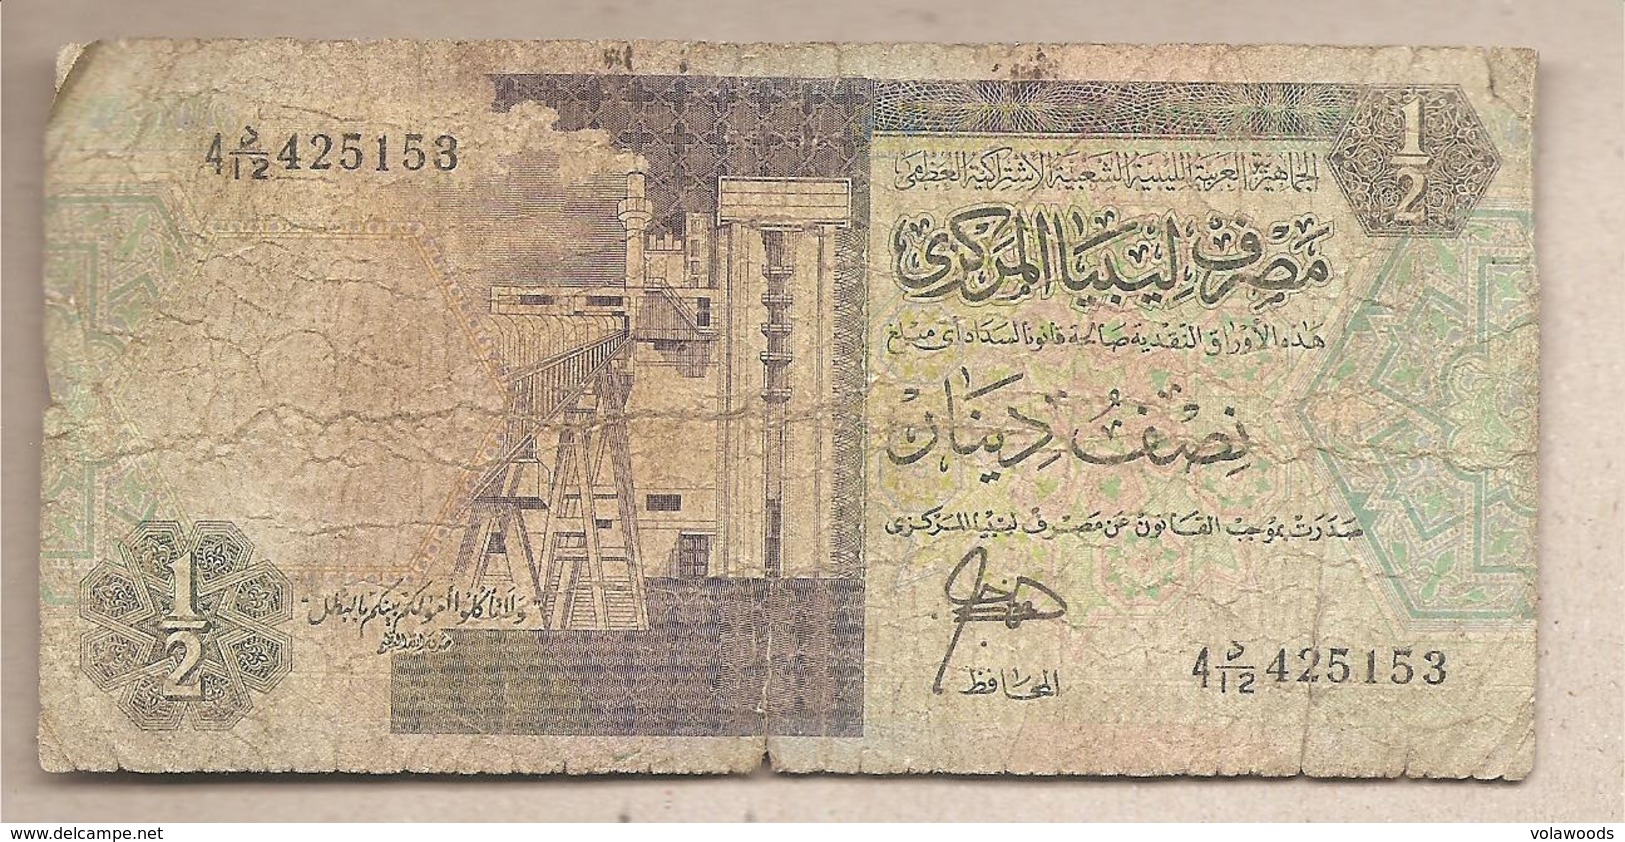 Libia - Banconota Circolata Da 1/2 Dinaro P-58a - 1991 #18 - Libya